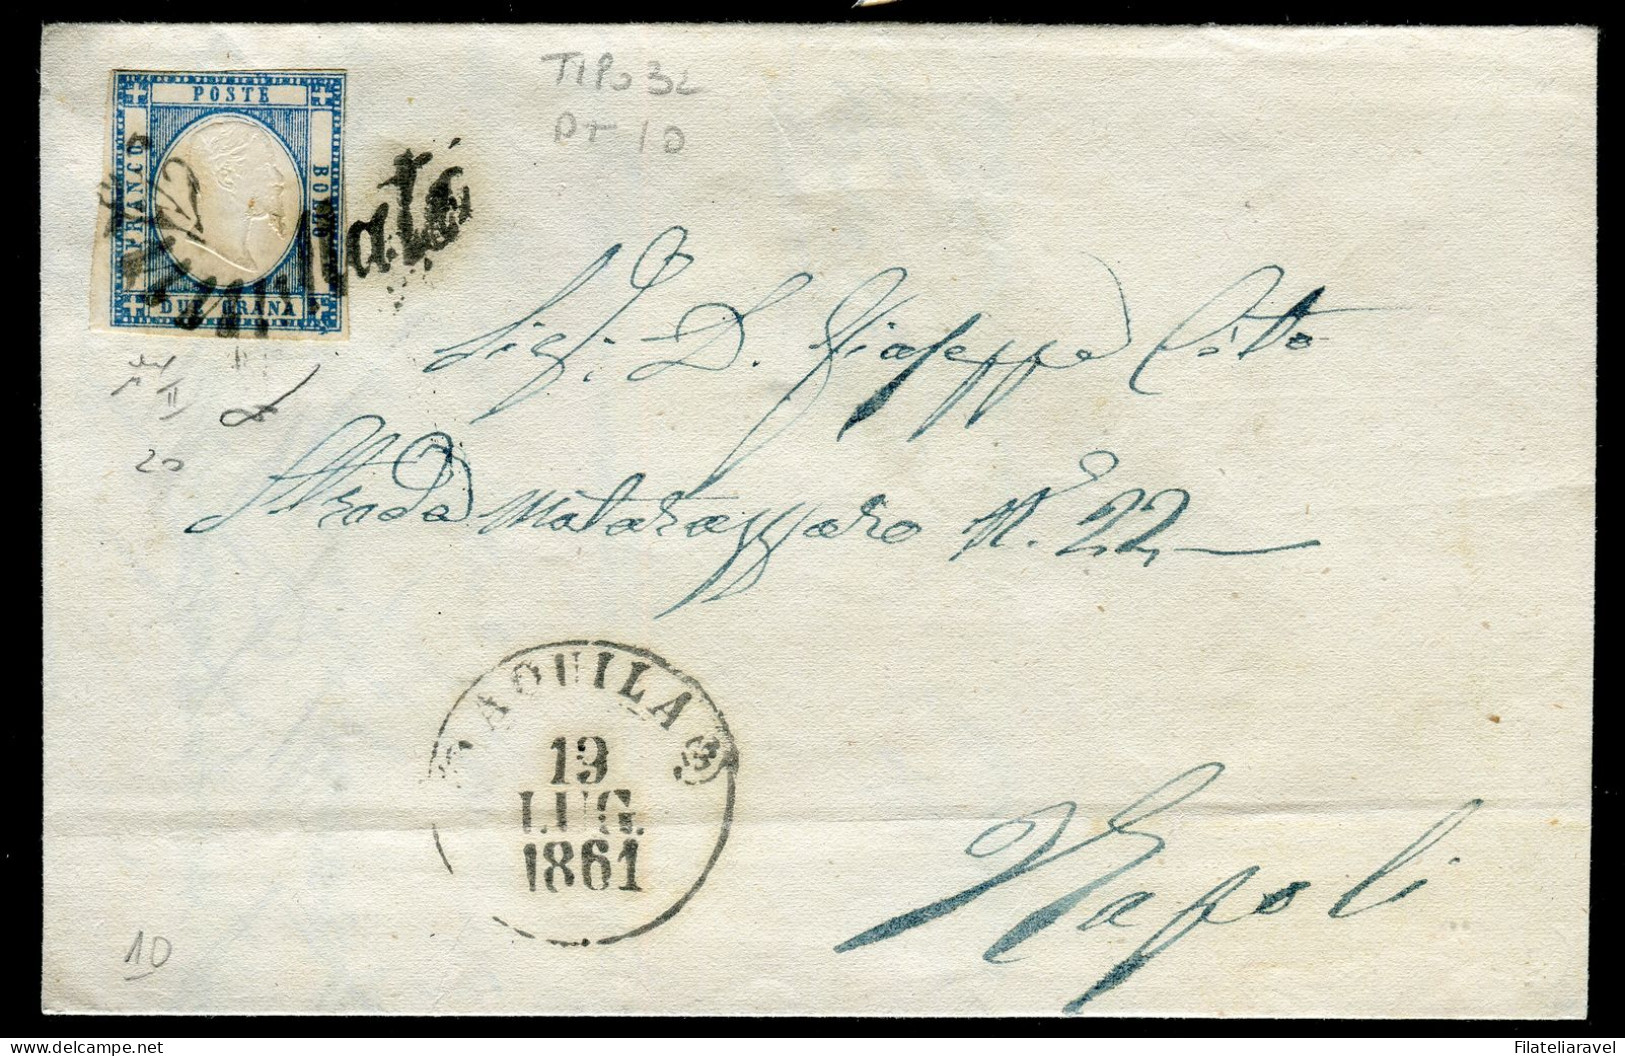 Ltr 1861 - Prov. Napoletane - Lettera Da Aquila A Napoli, 2 Gr Azzurro Chiaro (20 ) Svolazzo Tipo 32 Punti 10, Cert.Vies - Napels